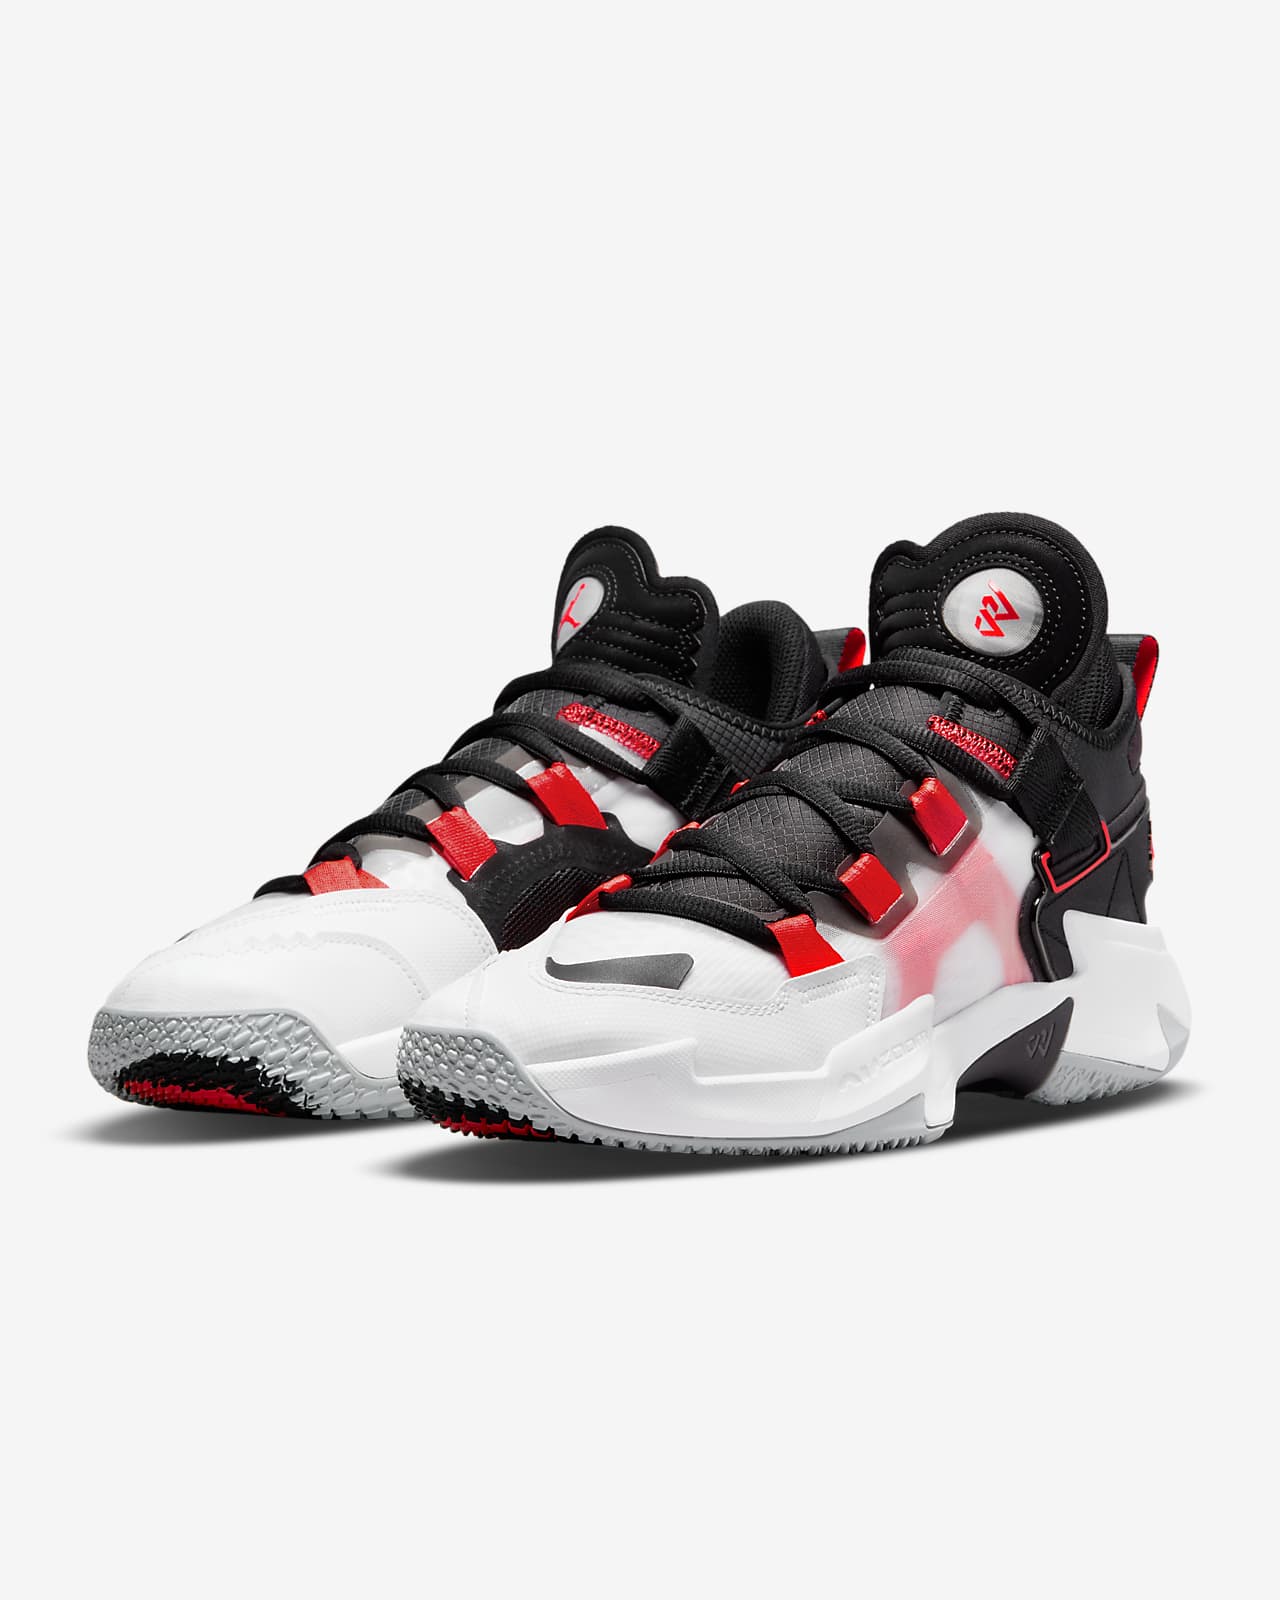 Jordan Why Not Zer0.5 Basketball Shoes in Black/Black Size 9.5 Finish Line Sport & Swimwear Sportswear Sports Shoes Basketball 